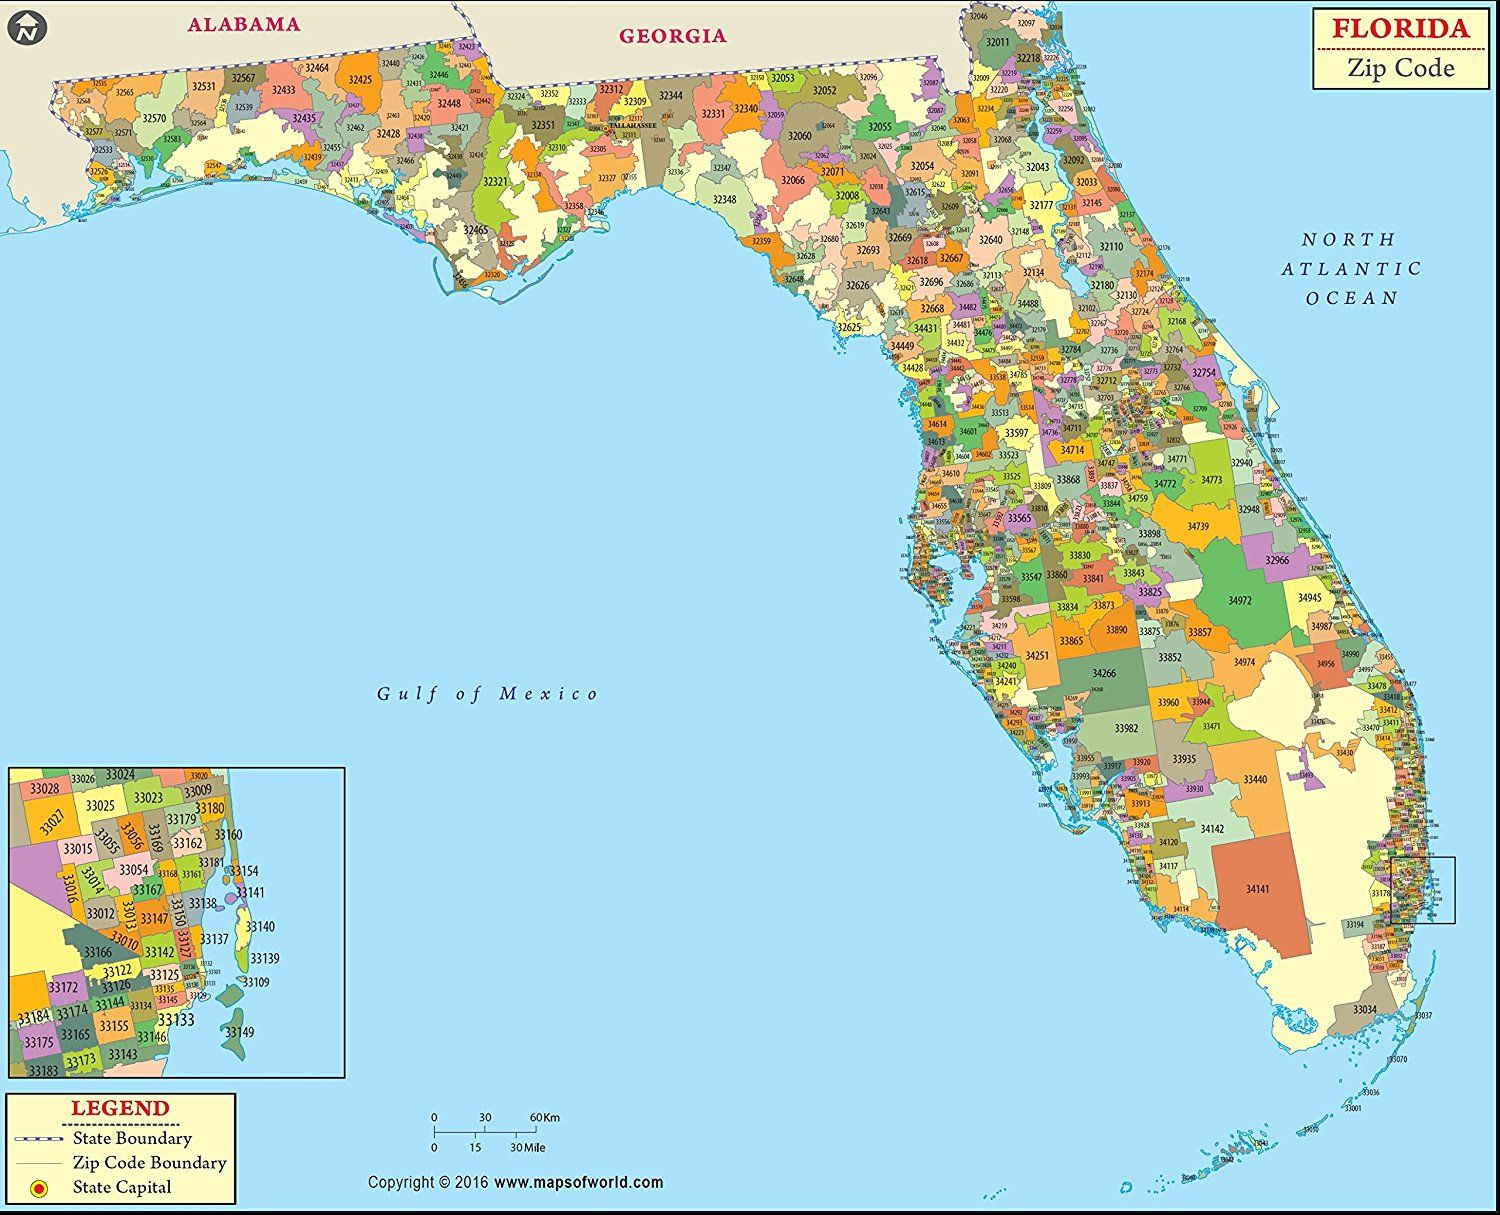 MOW AMZ On Twitter Florida Zip Code Map Of Florida Zip Code Map